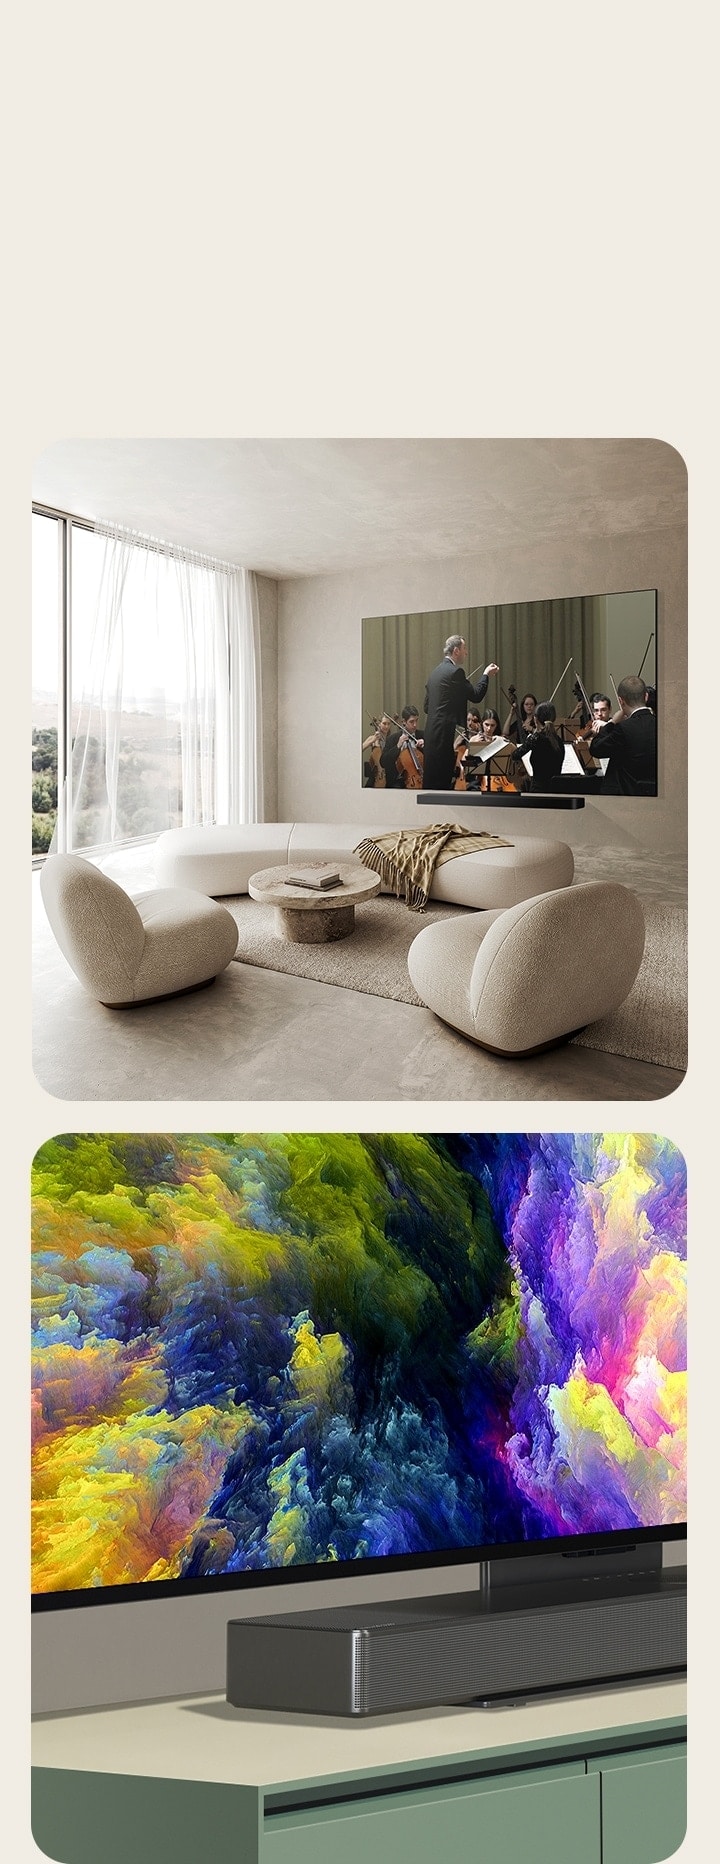 從底部 45 度角看 OLED C4 電視螢幕上的抽象藝術品。  在潔淨的生活空間中，OLED C4 和 LG Soundbar 緊掛在牆上，而電視螢幕上正播放著管弦樂表演。